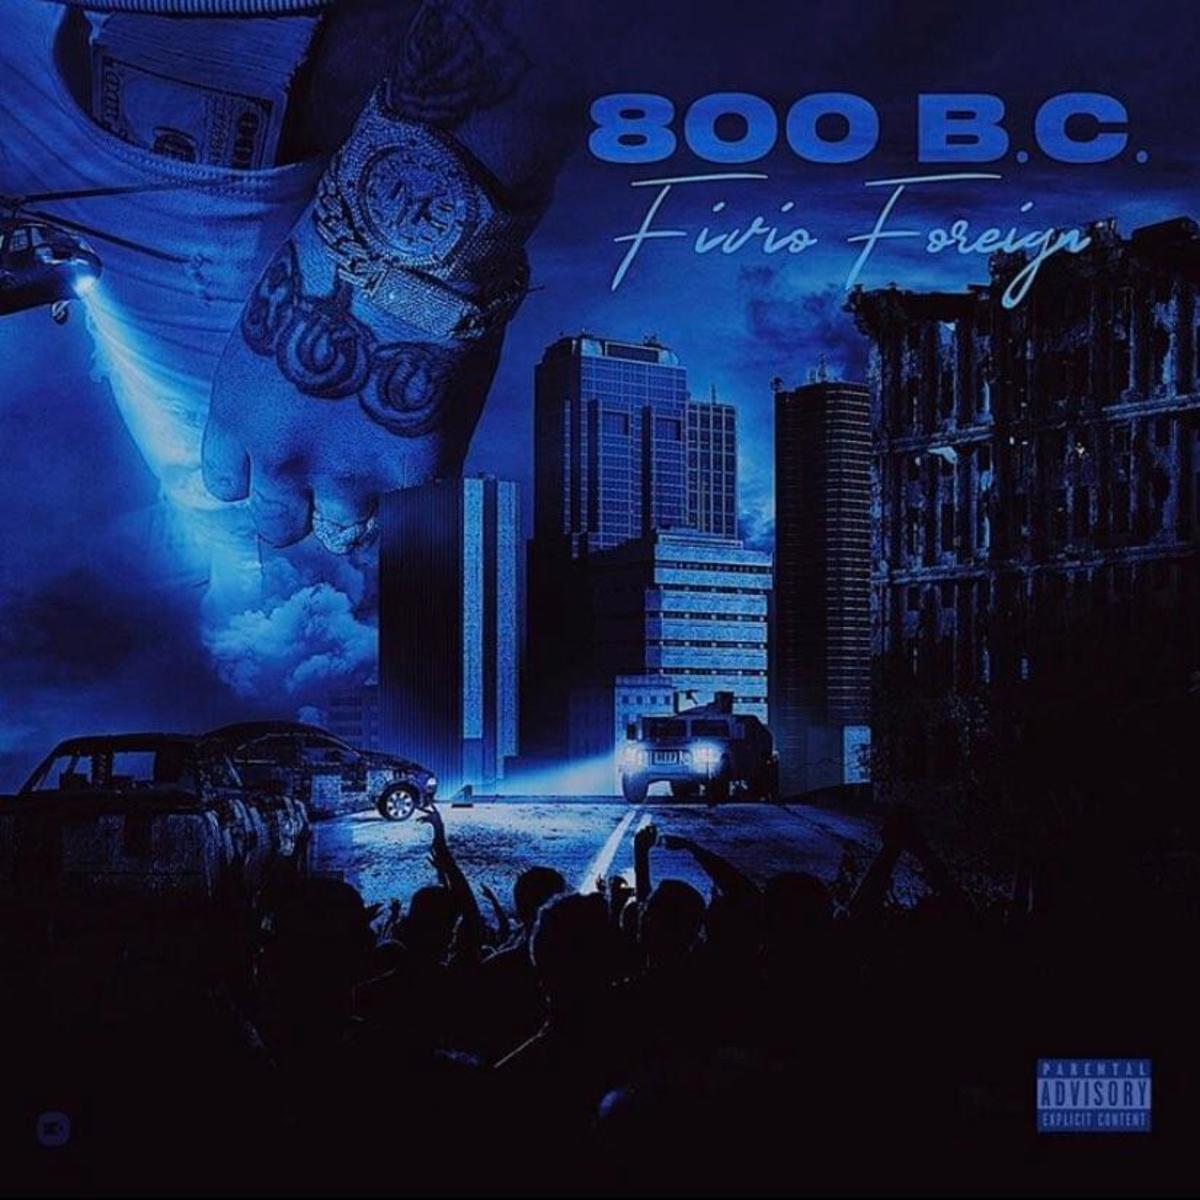 Fivio Foreign – 800 B.C. (Album Review)